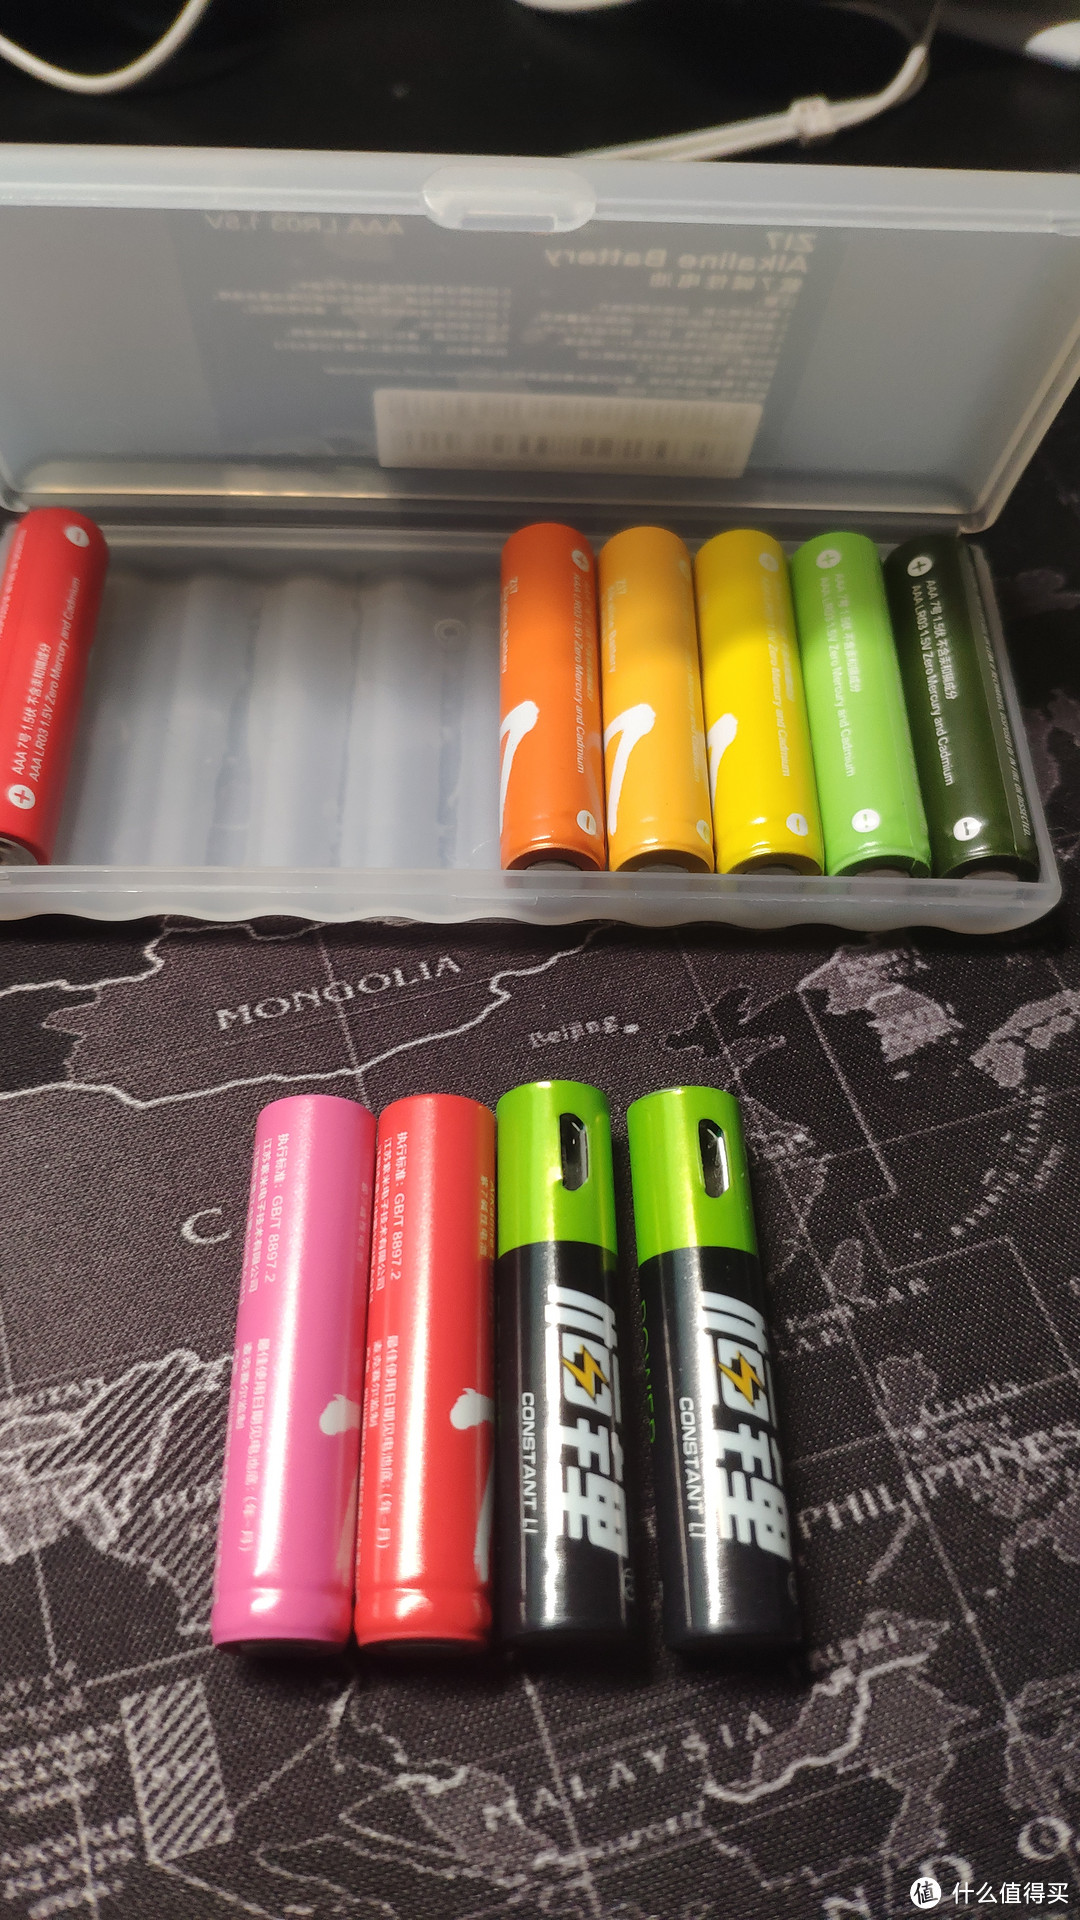 小米彩虹电池和充电锂电池，这个锂电池稍微比一般电池尺寸大一点，放入的时候会略紧